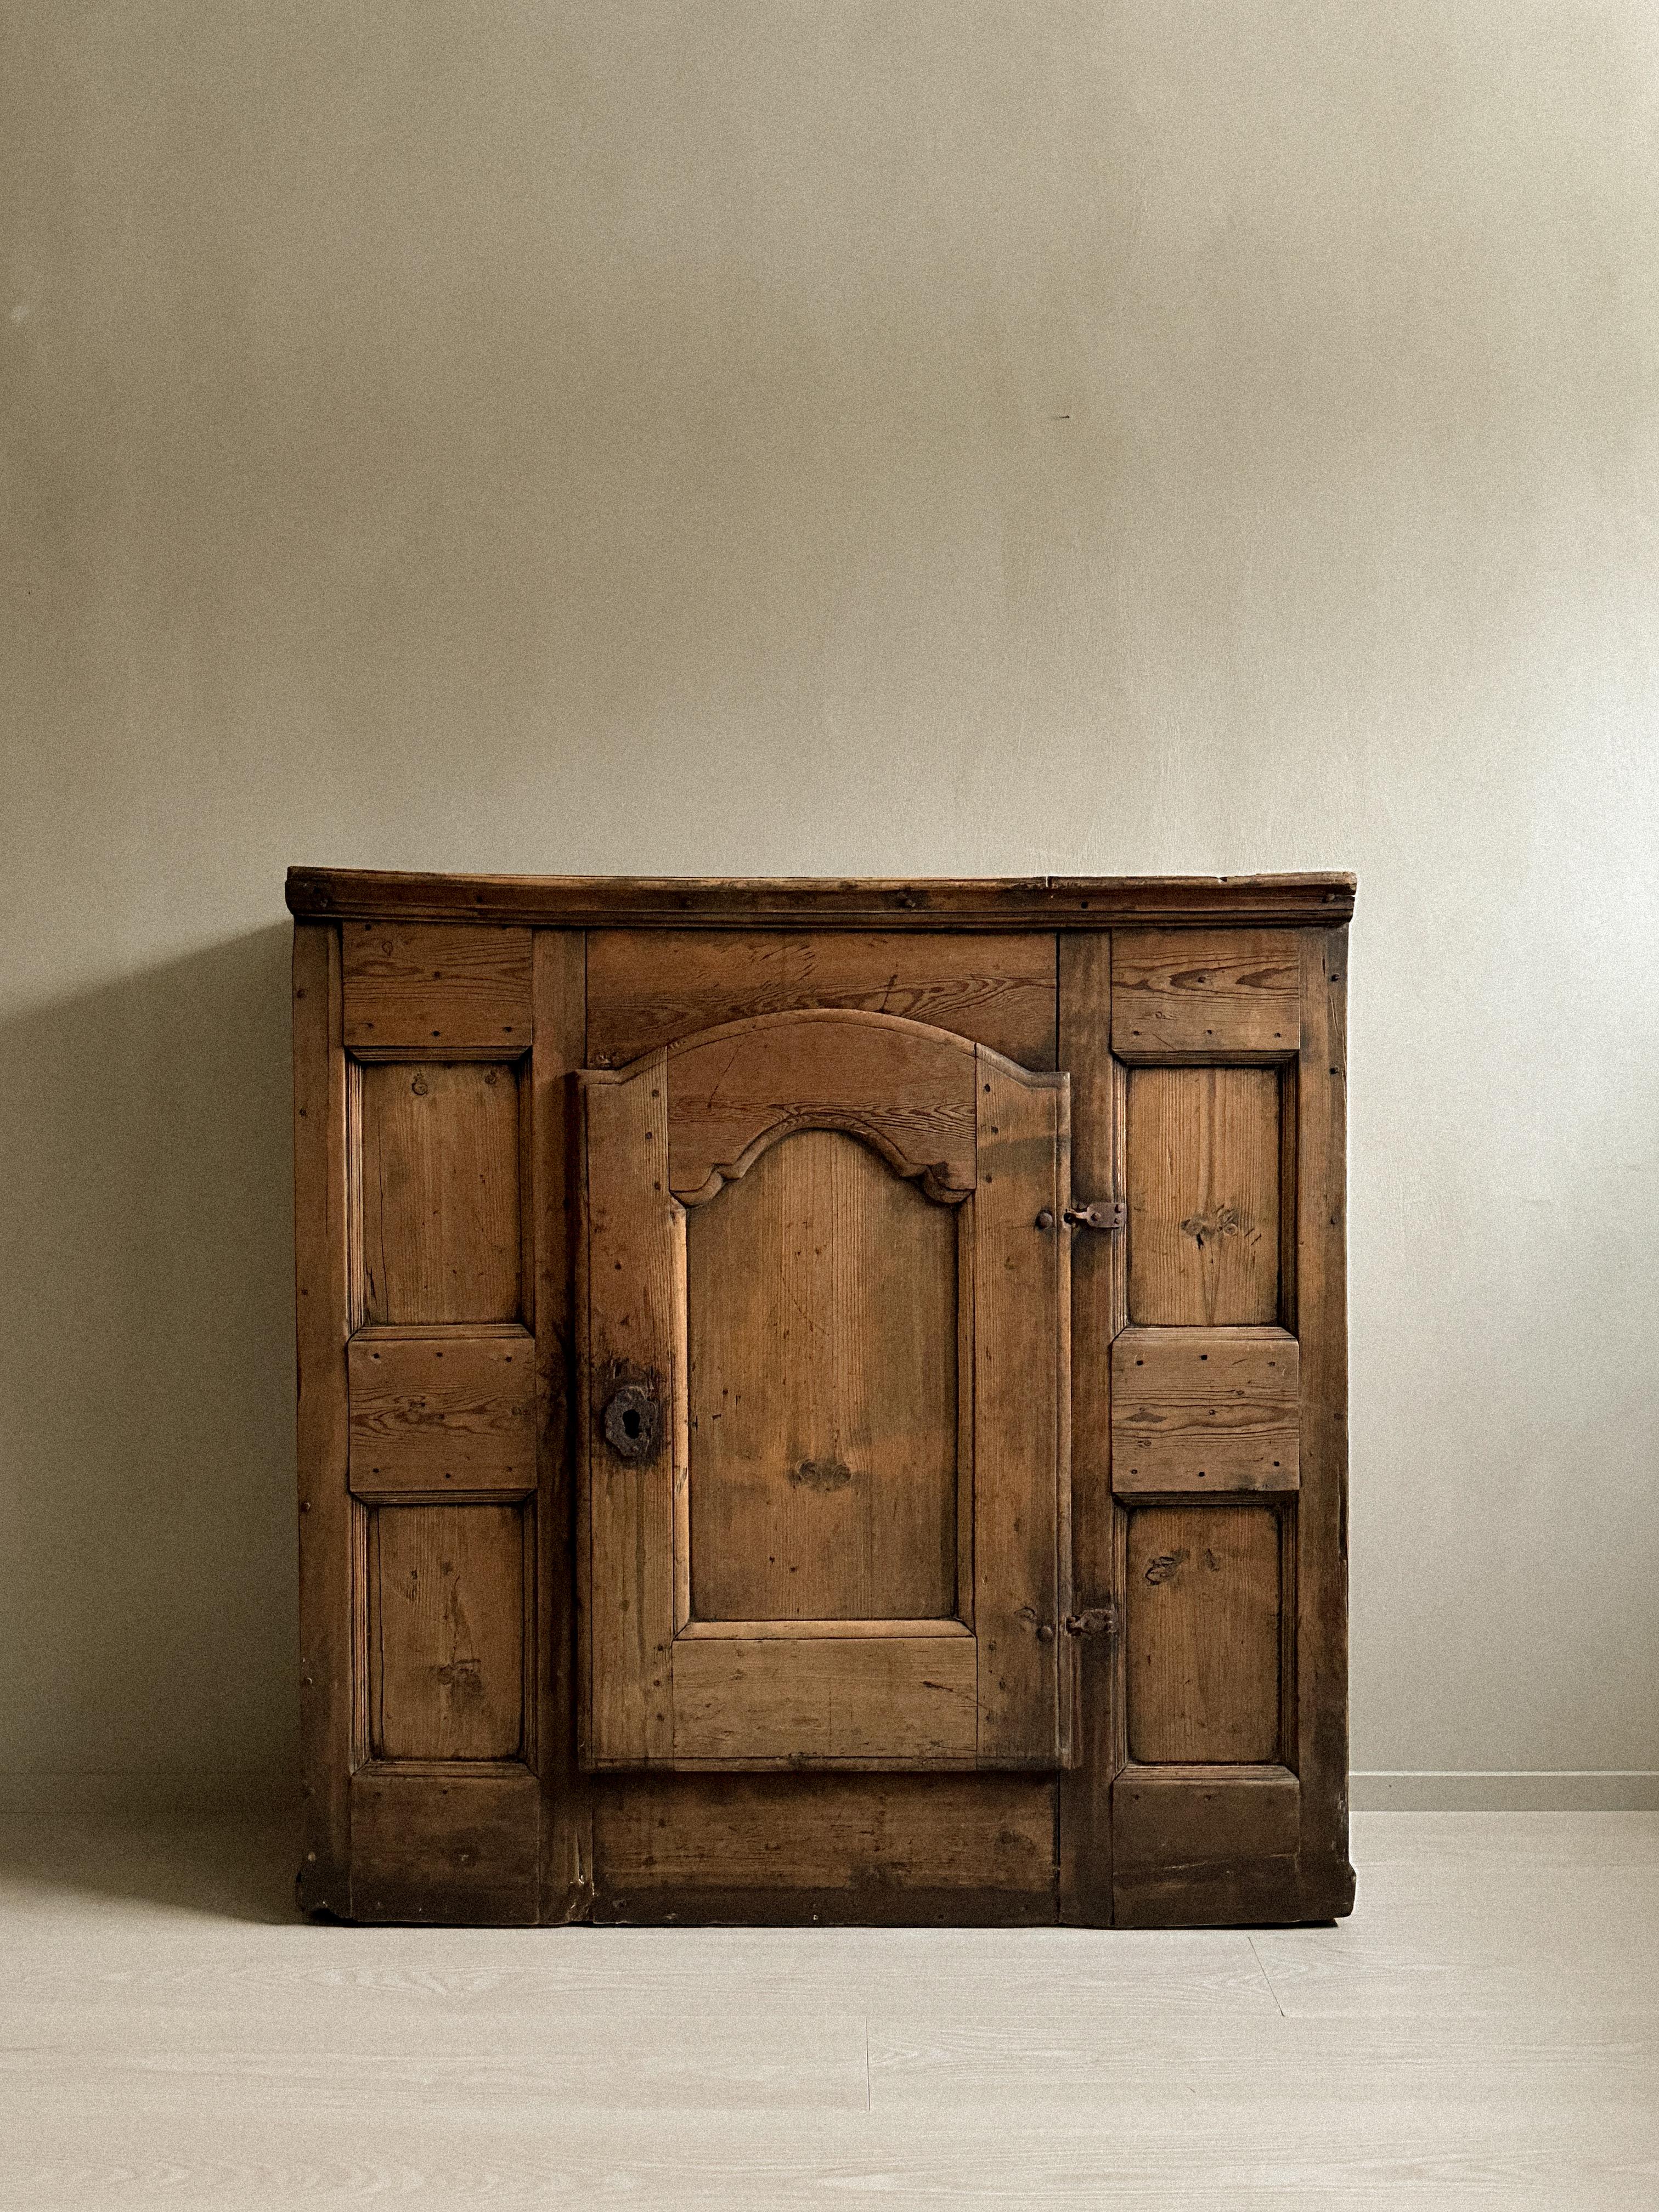 Merveilleuse armoire primitive, designer inconnu, Scandinavie, c.1800. Ce meuble de rangement adopte le style de vie wabi-sabi et apporte de la chaleur à votre espace.